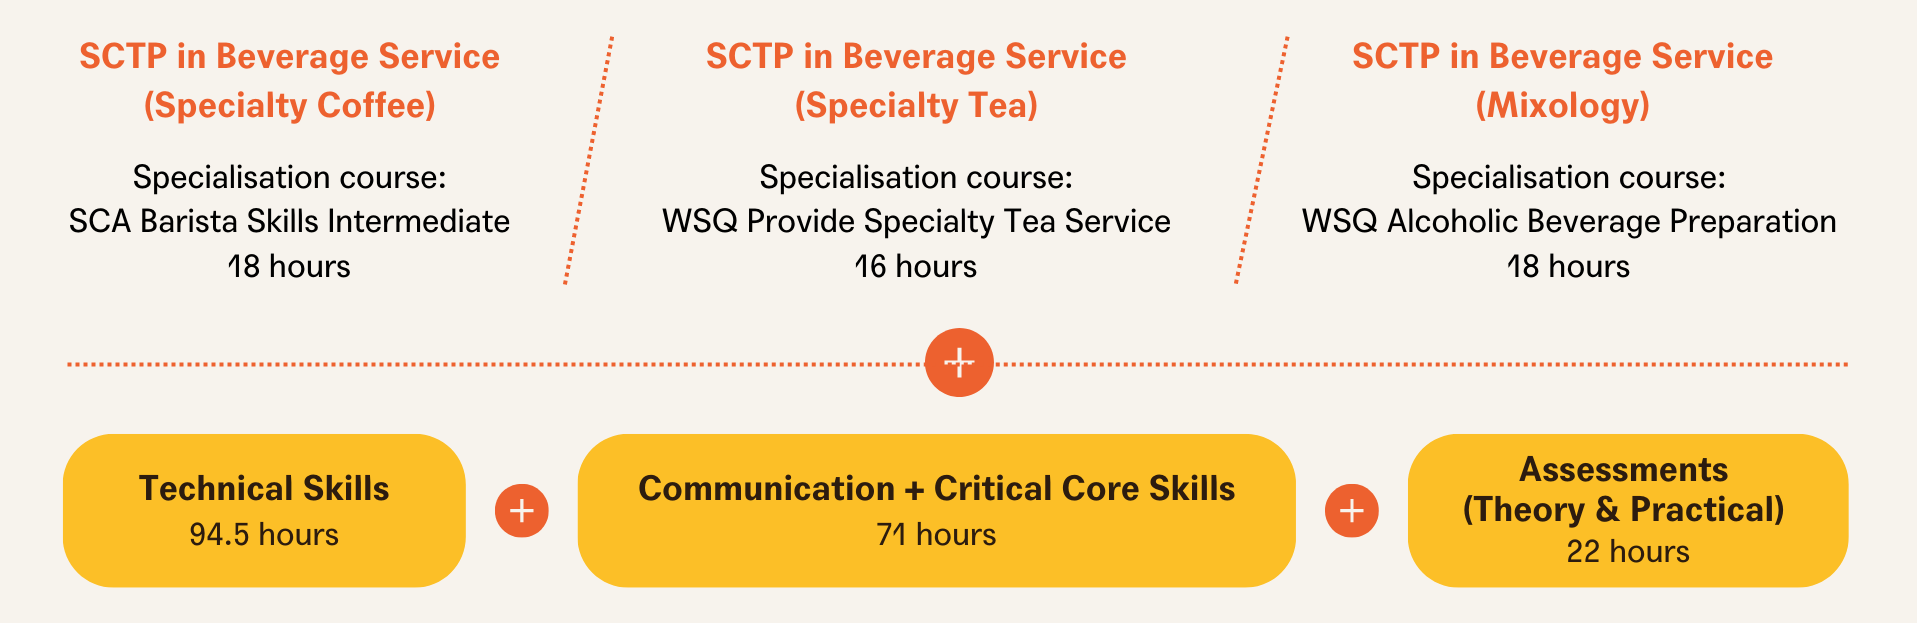 SCTP Diagram #2 Final